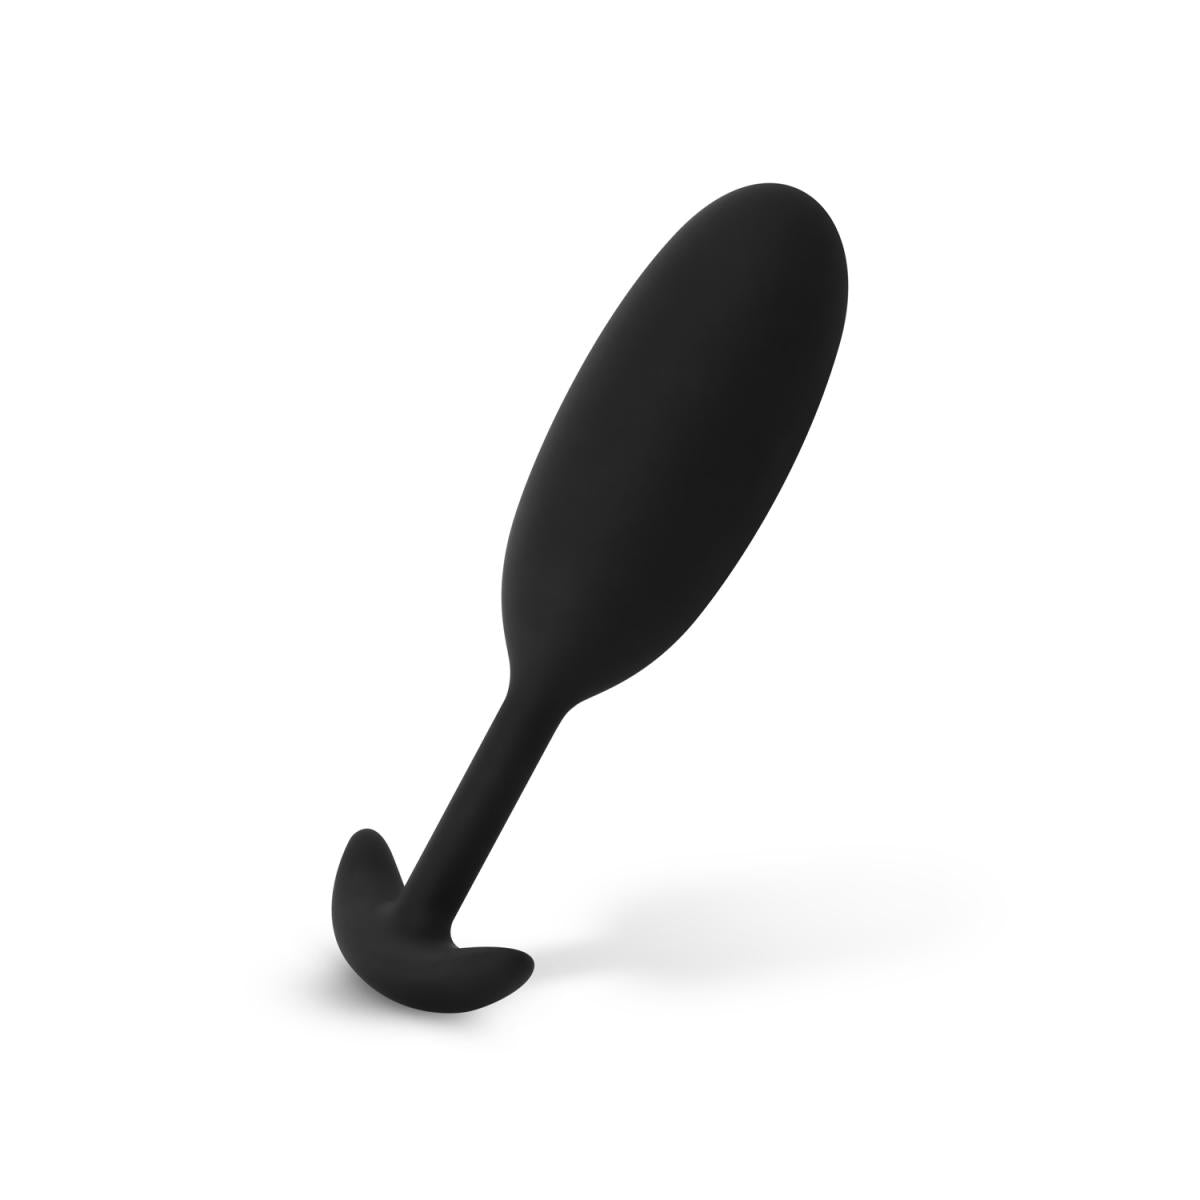 Ovale, verzwaarde, zwarte butt plug uit de EasyToys Anal Collection. De butt plug is gemaakt van zachte siliconen en te koop bij Flavourez.